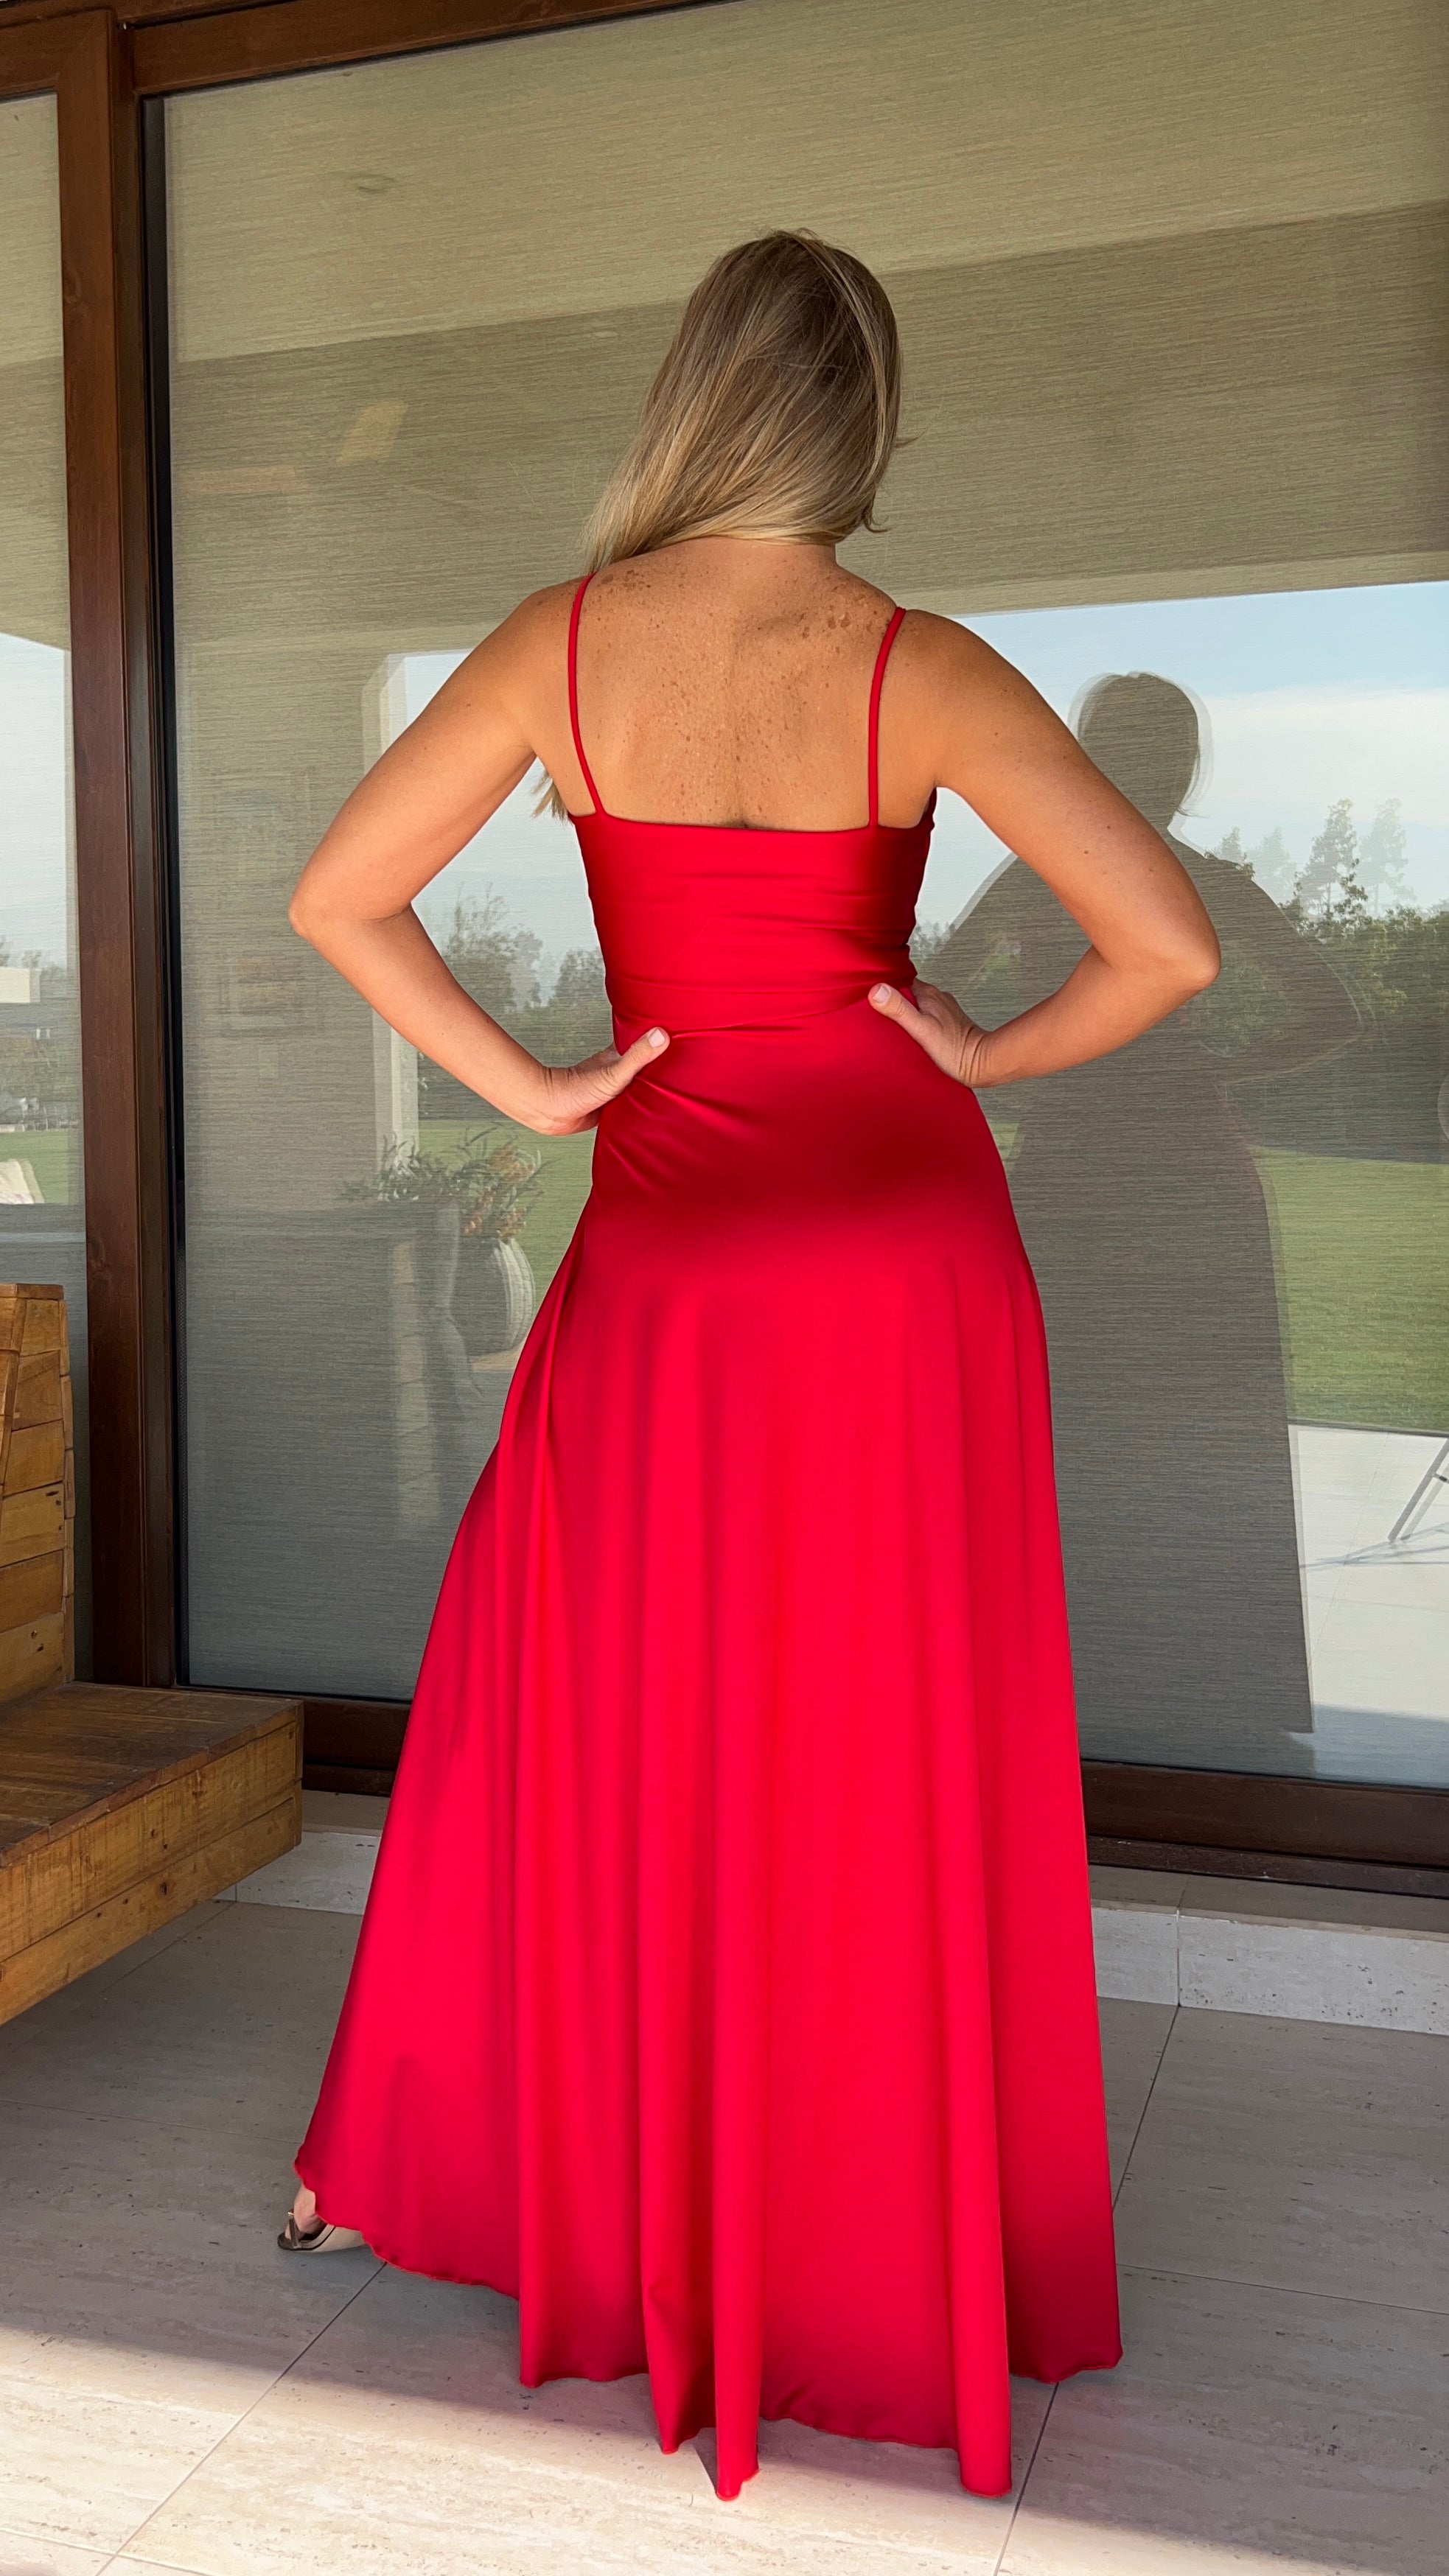 Vestido Mía Dupont rojo | vestido de fiesta mujer rojo satinado| Amoramar.cl 2